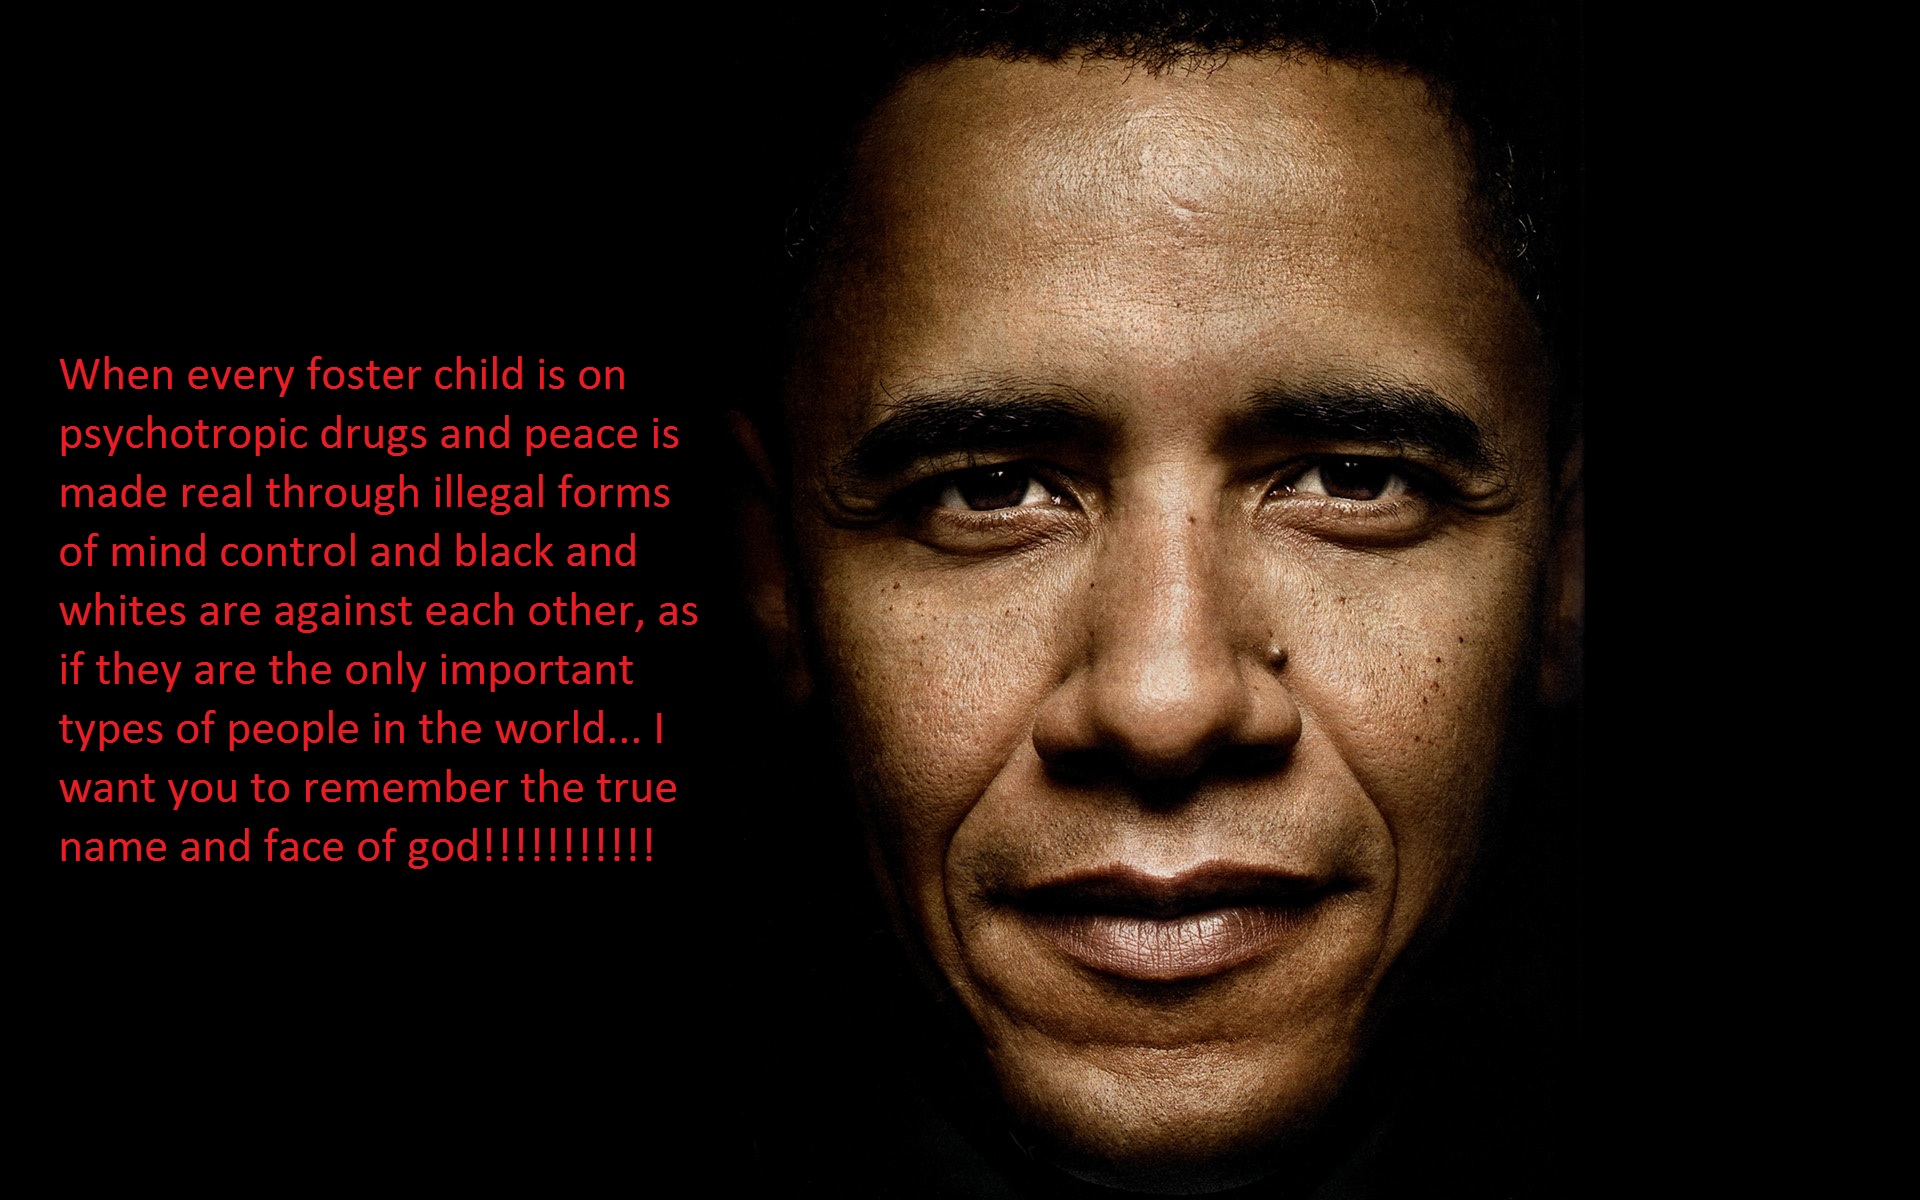 The Darkside of Obama